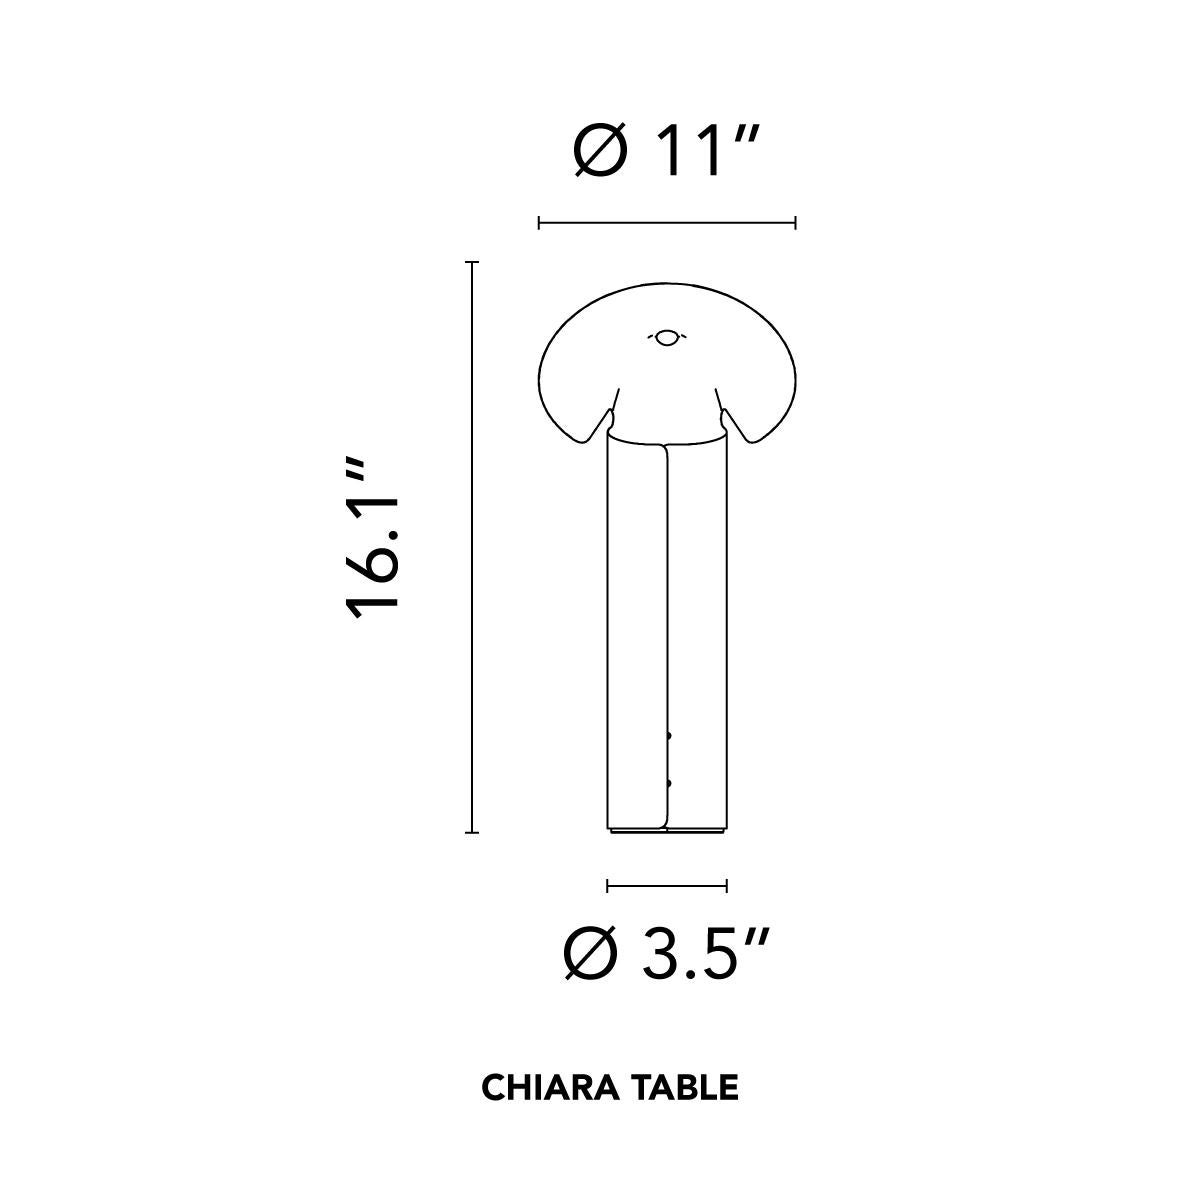 La lampe Chiara, conçue par Mario Bellini pour Flos en 1969, est un modèle emblématique formé d'une simple feuille d'acier inoxydable poli qui a été découpée et roulée en forme de cylindre. Cette structure en forme d'origami cache une source